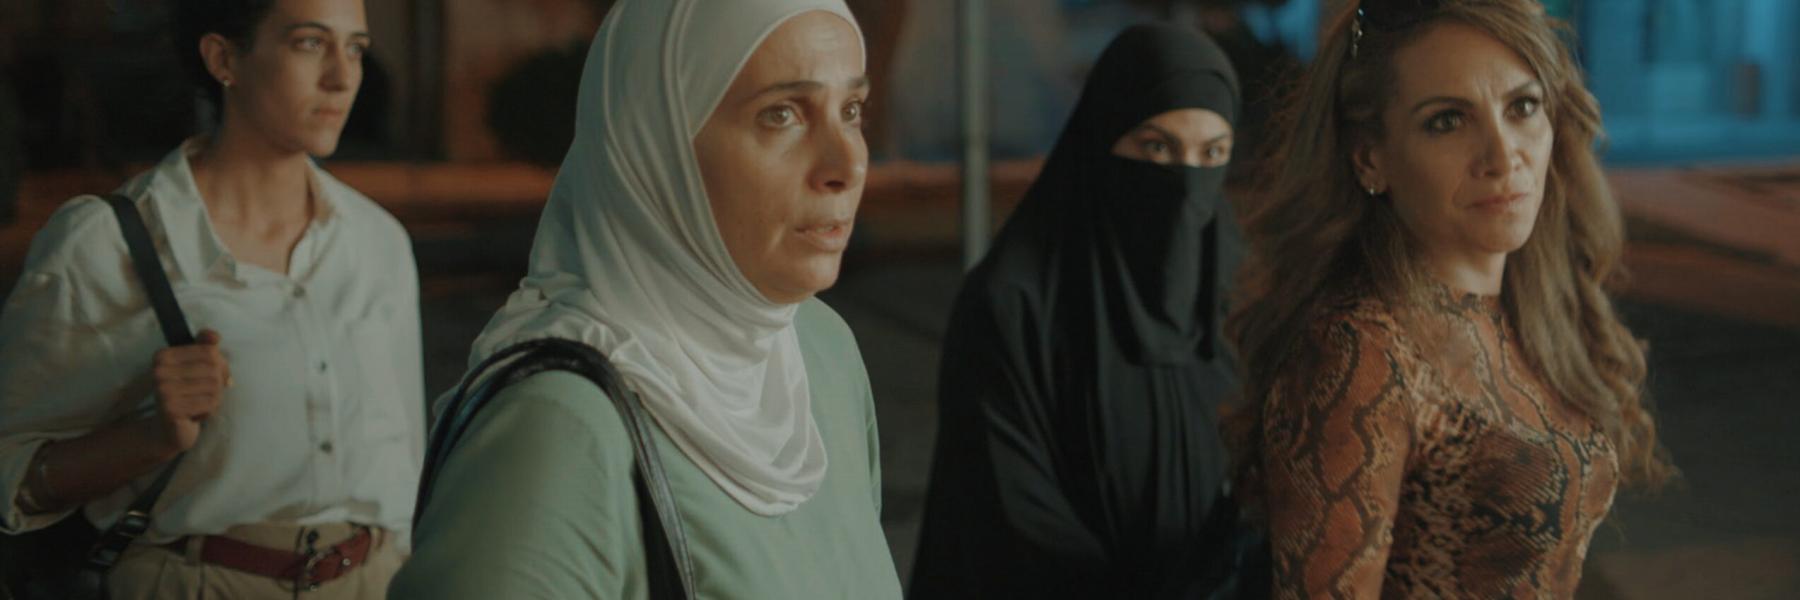 الفيلم الأردني بنات عبدالرحمن